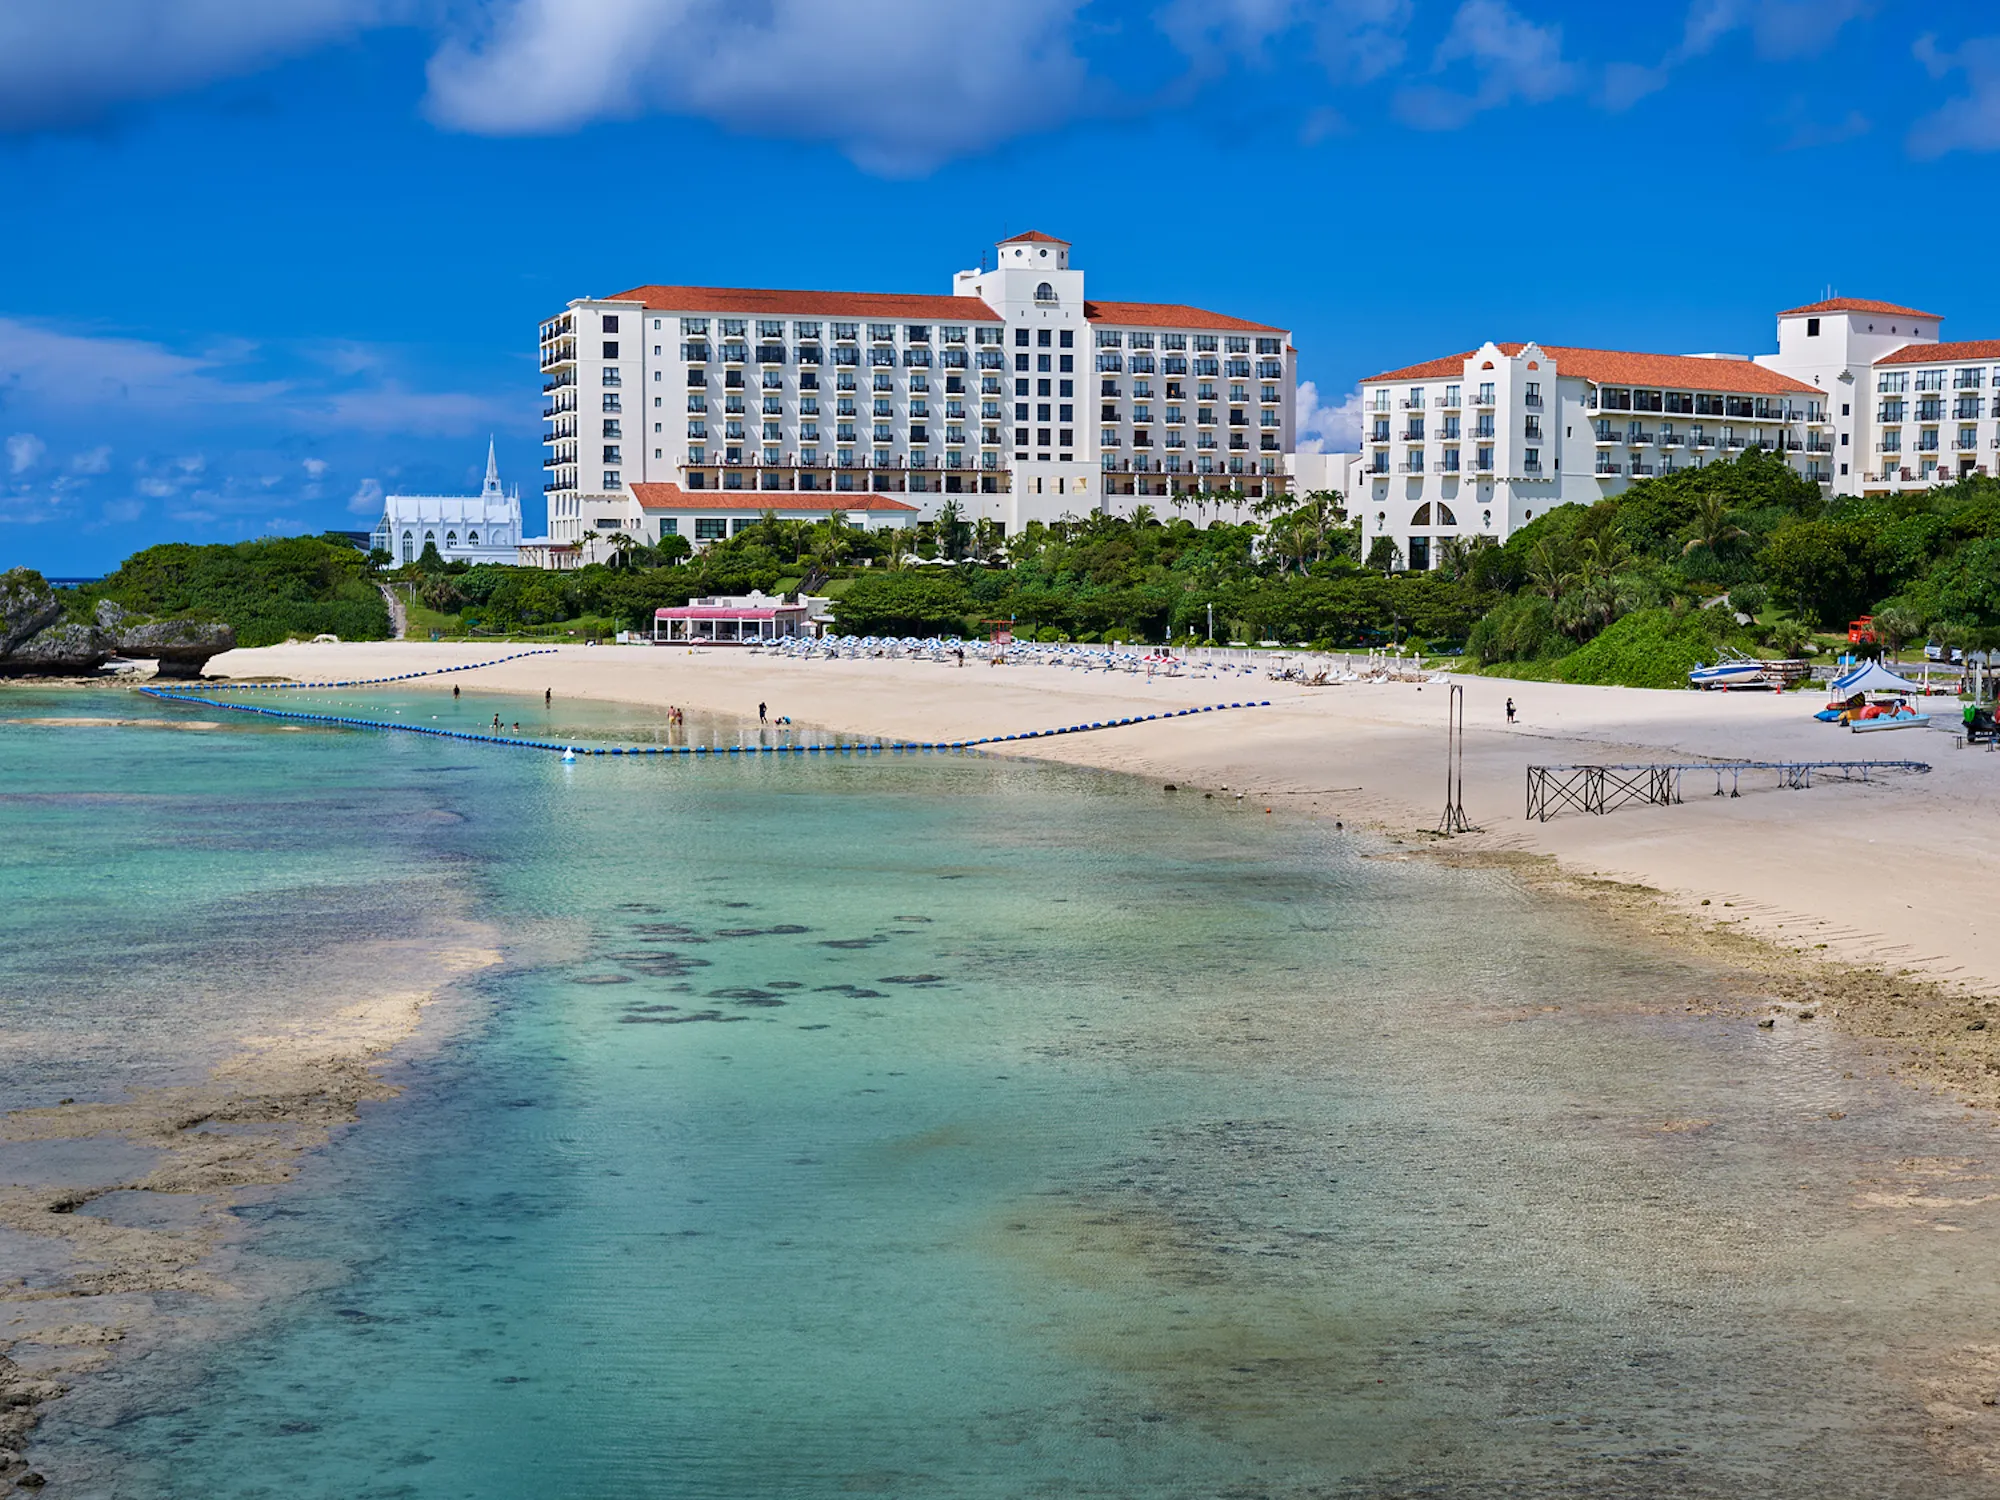 リゾート気分を味わえる沖縄ビーチサイドリゾートホテル特集